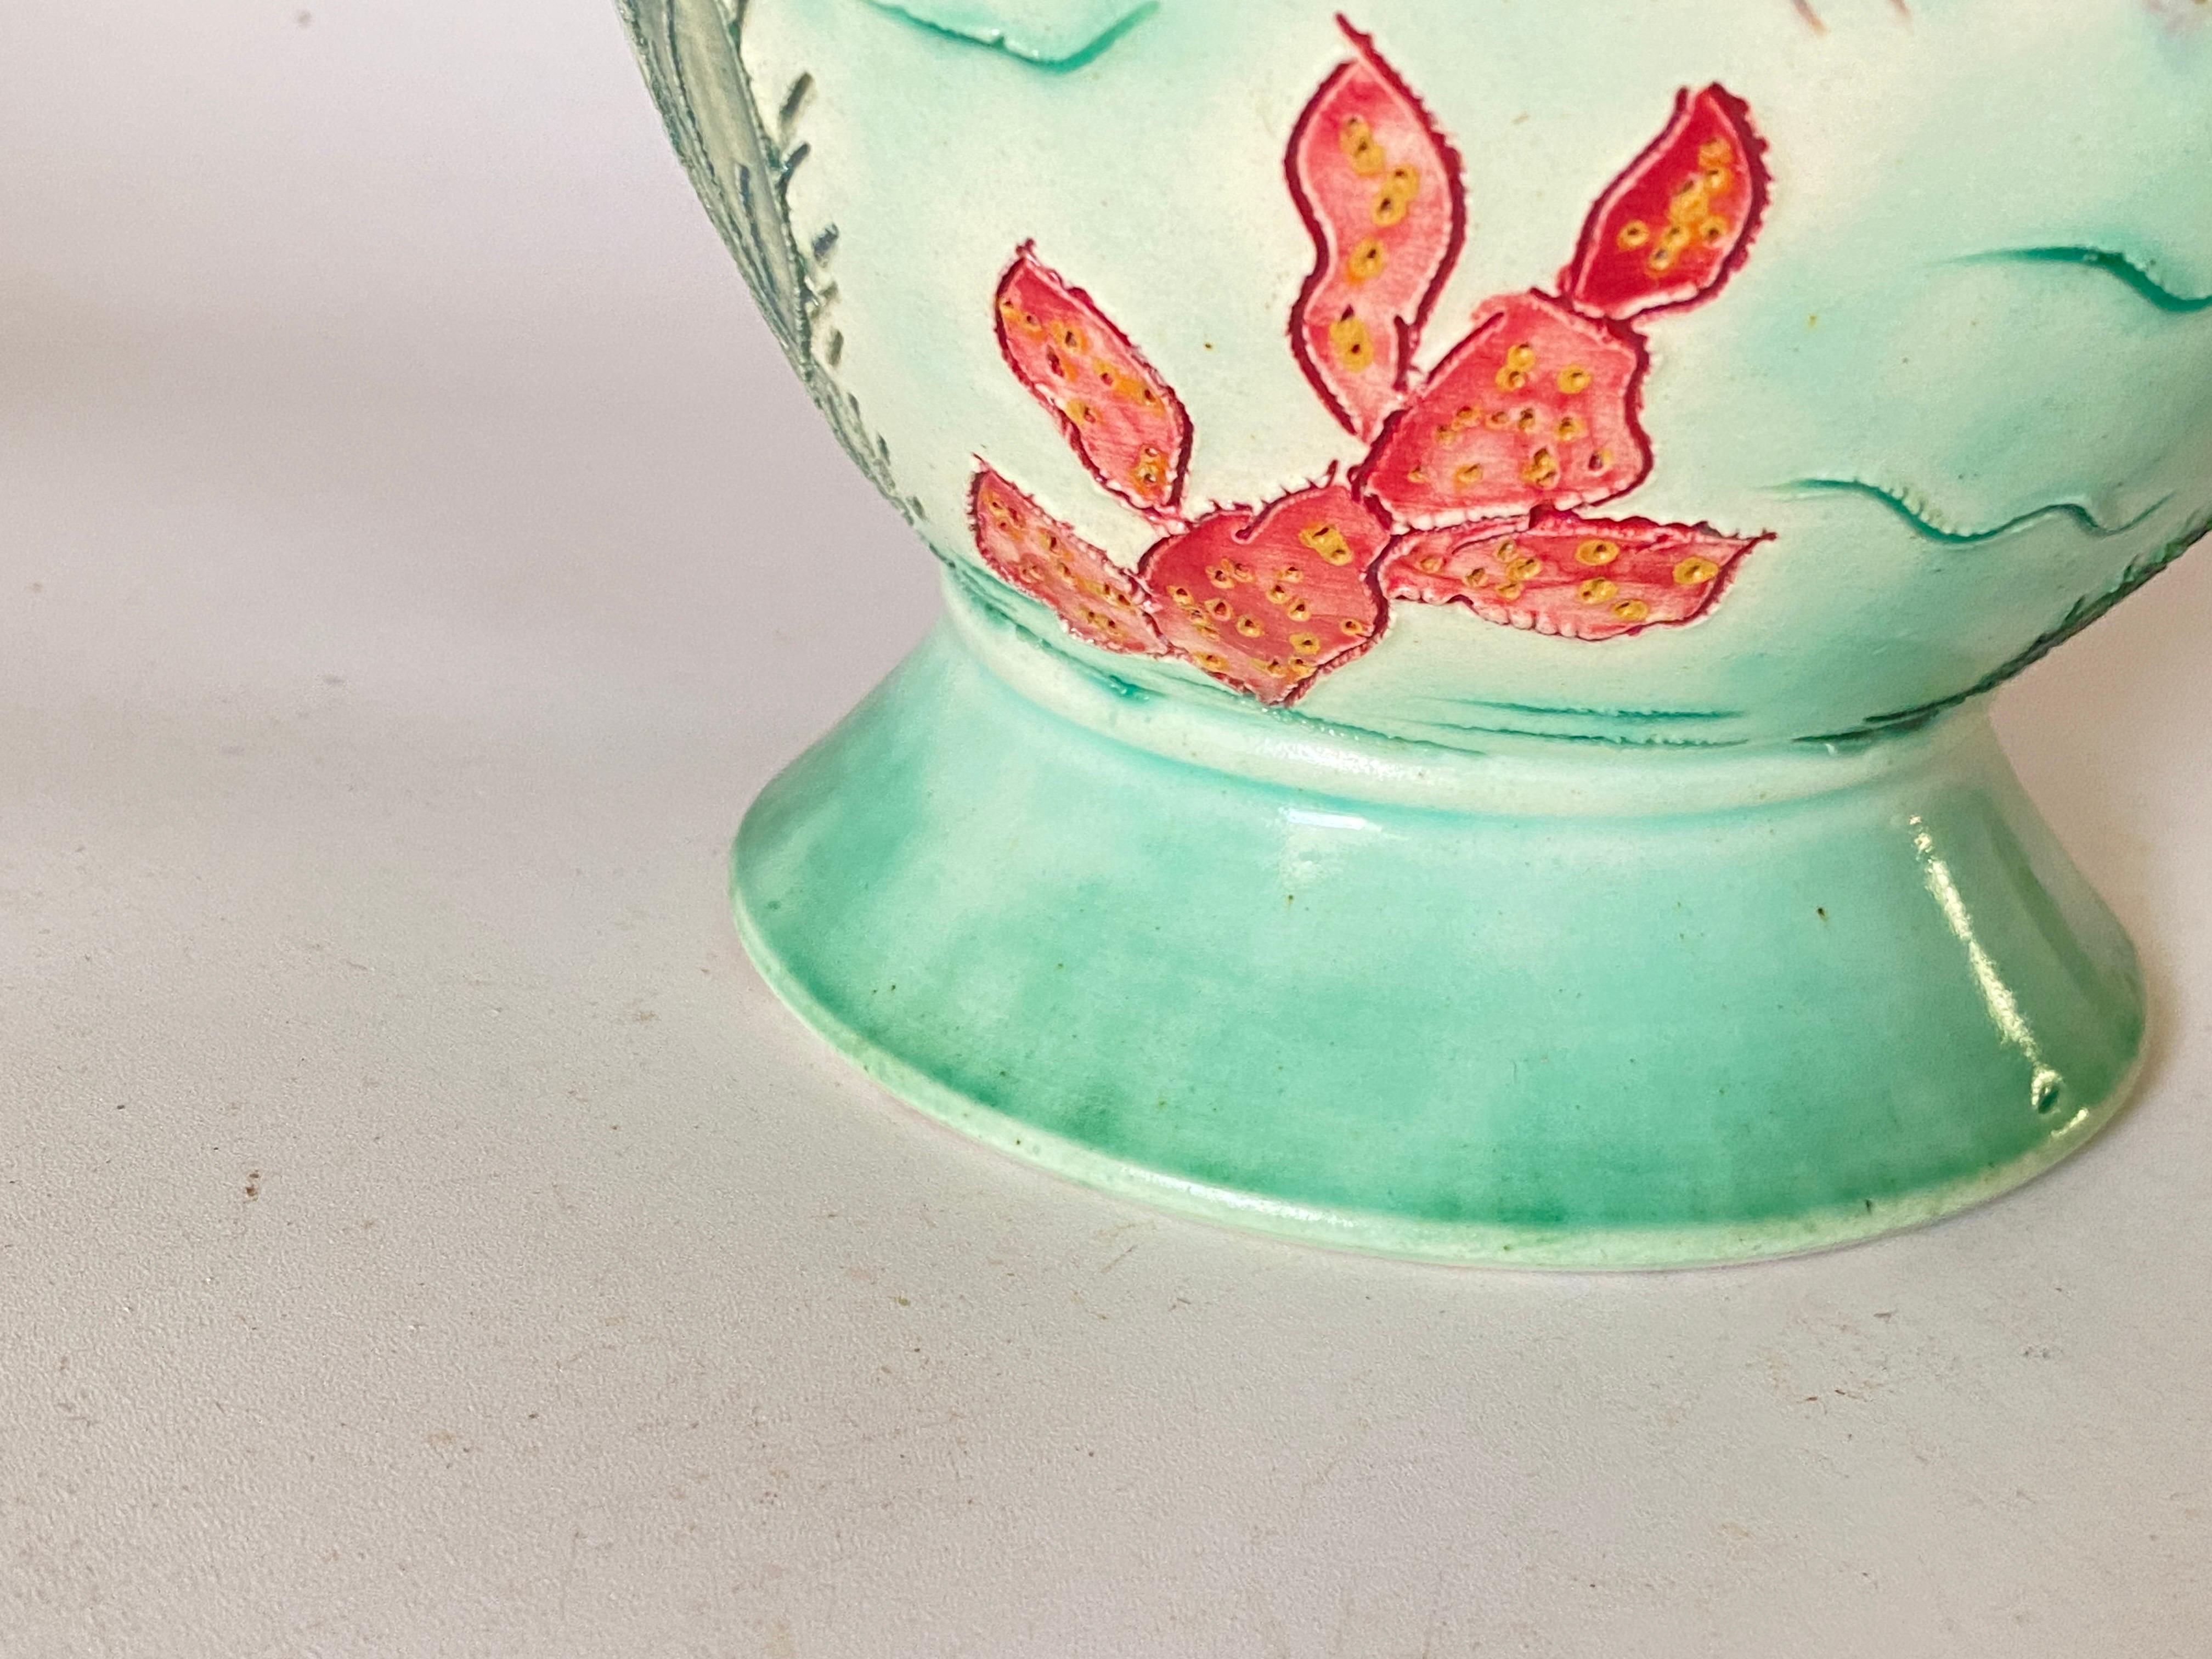 Il s'agit d'un vase en céramique, qui a été peint à la main. Il est signé par l'artiste et daté de CIRCA 1970. Ce vase a été fabriqué à Vallauris en France. Les couleurs dominantes sont le rouge et le vert.